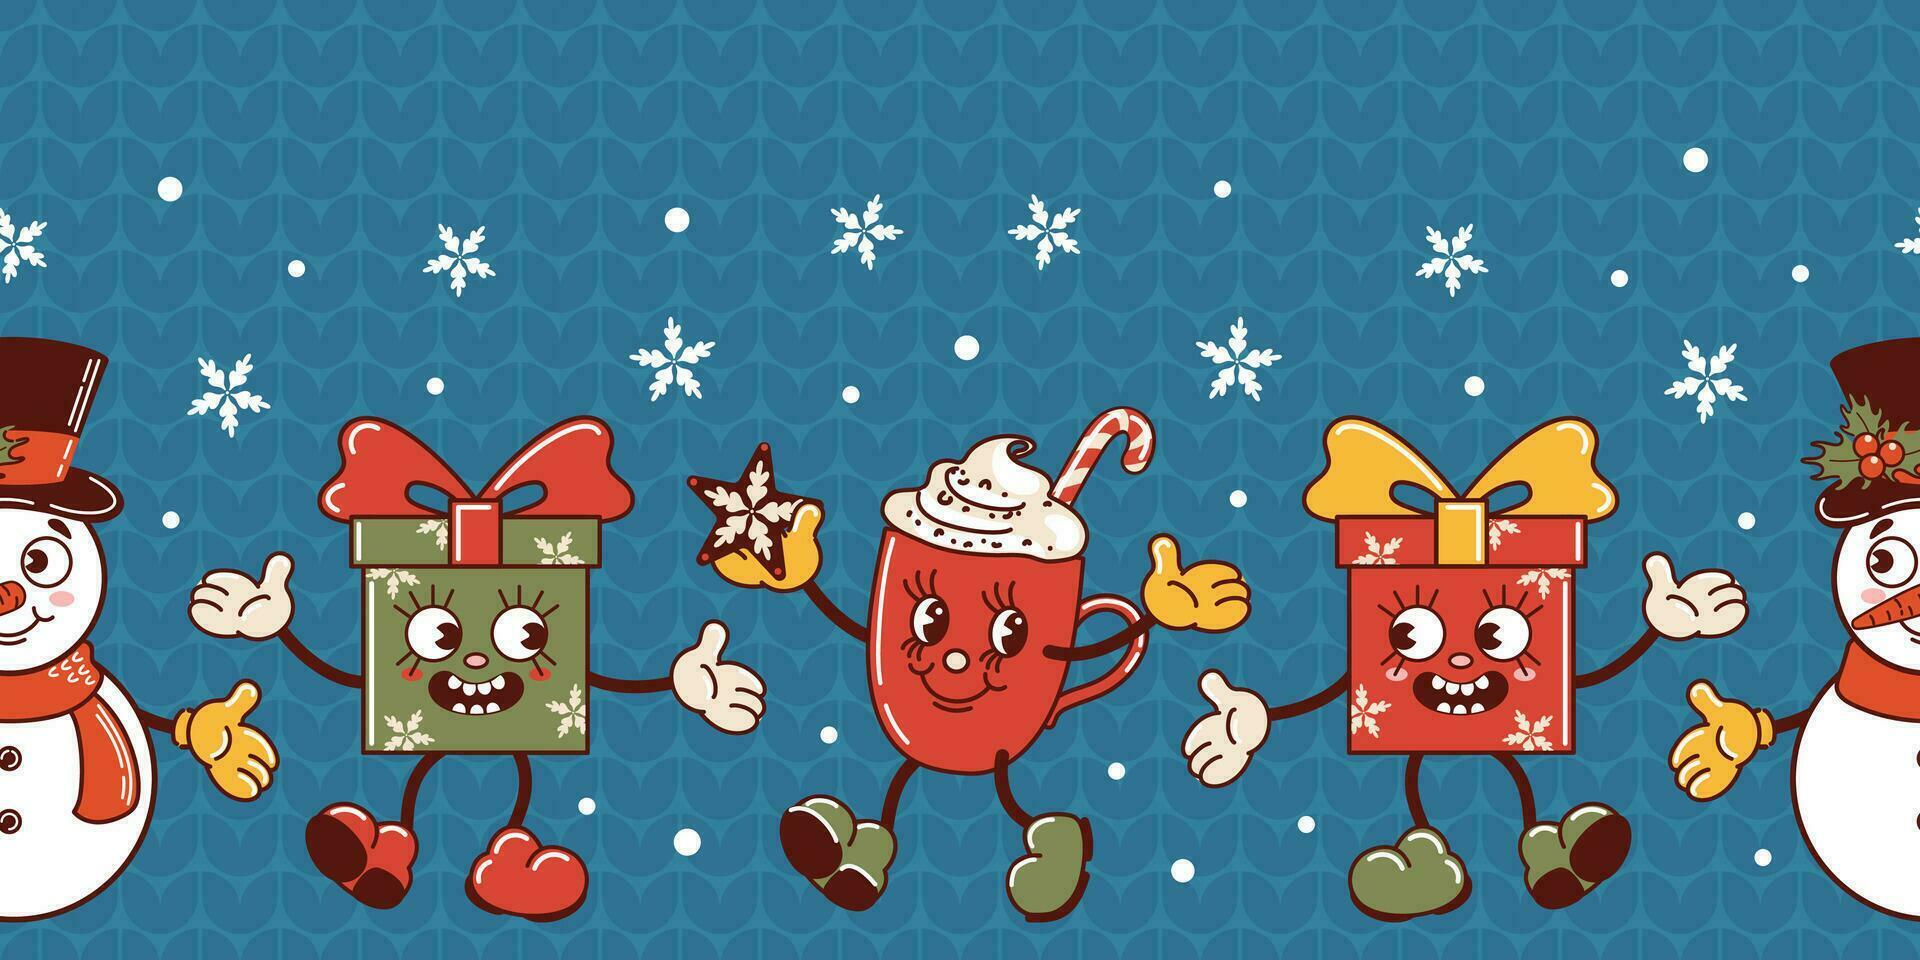 sneeuwman, Kerstmis geschenk, heet chocola mok, snoep riet. schattig oud retro tekenfilm stijl tekens dansen. horizontaal naadloos grens. gebreid lelijk trui. sneeuwval. behang, verpakking, achtergrond vector